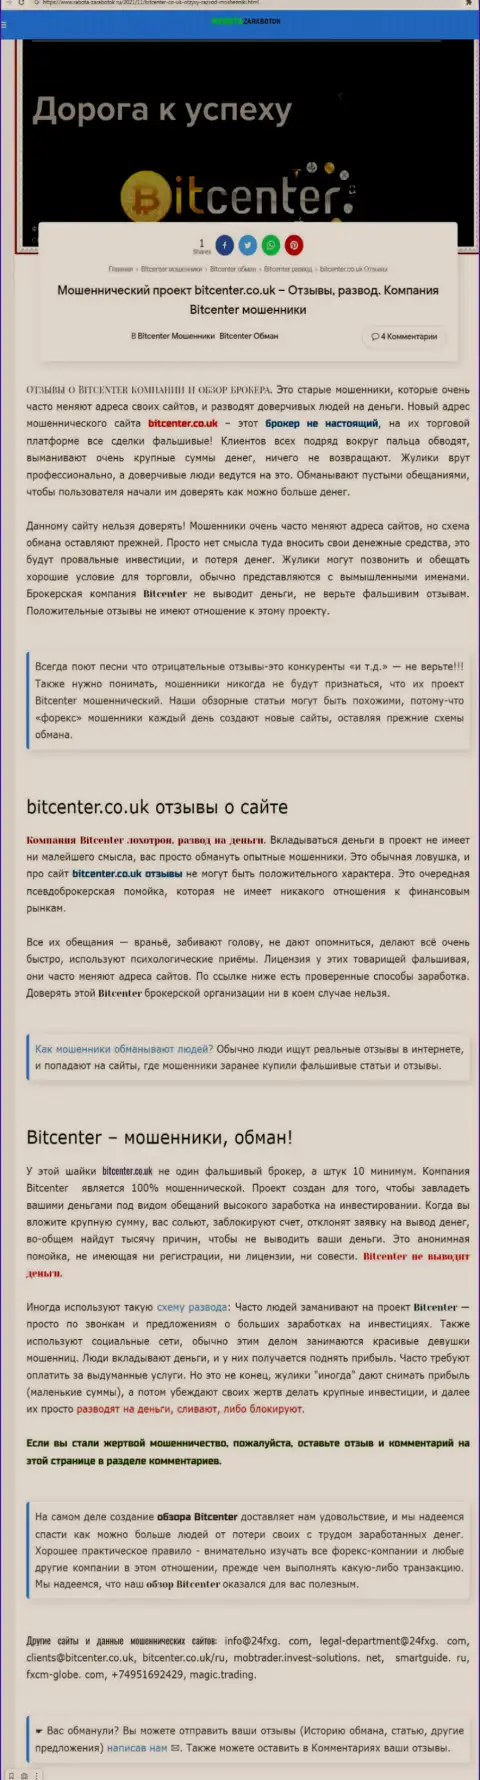 Bit Center - организация, сотрудничество с которой приносит только убытки (обзор проделок)